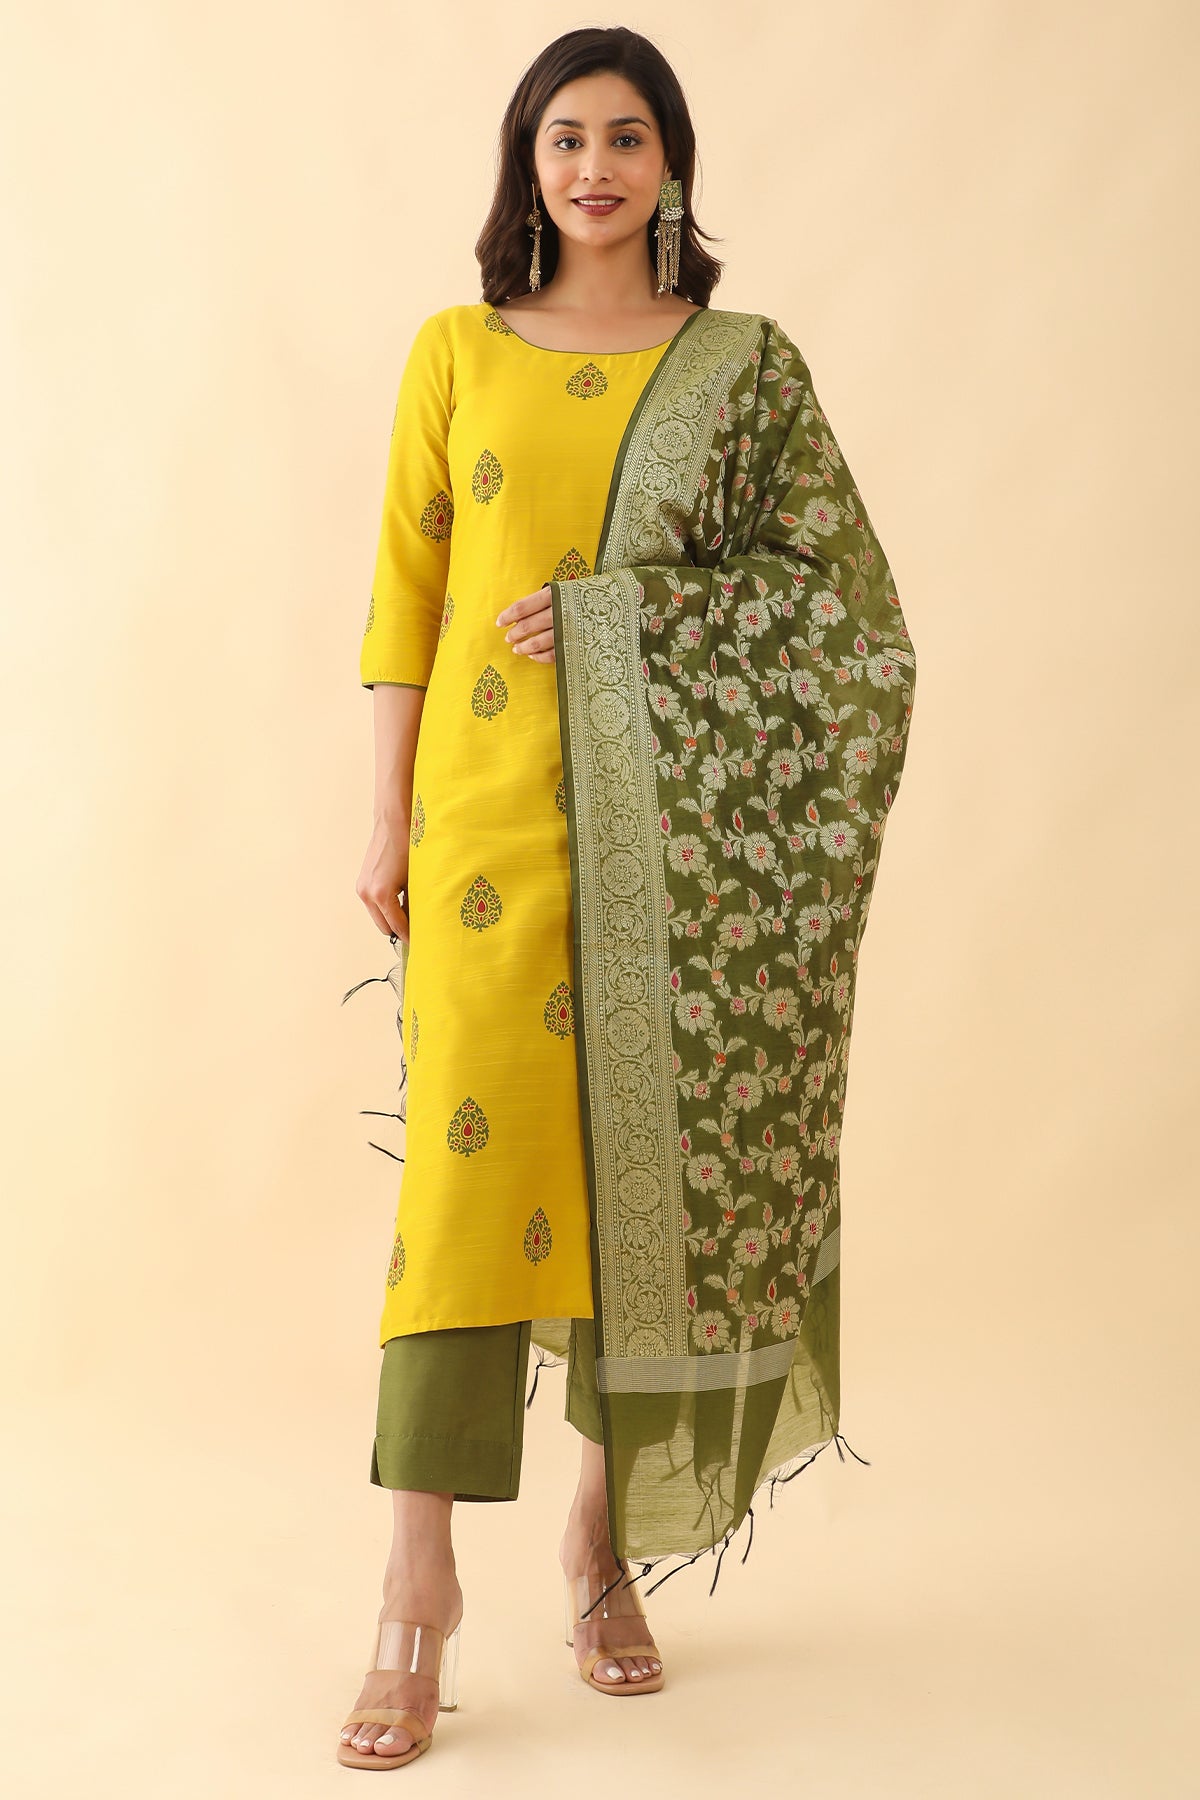 All Over Floral Motif Printed Kurta Set With Banarasi Dupatta - Yellow & Green